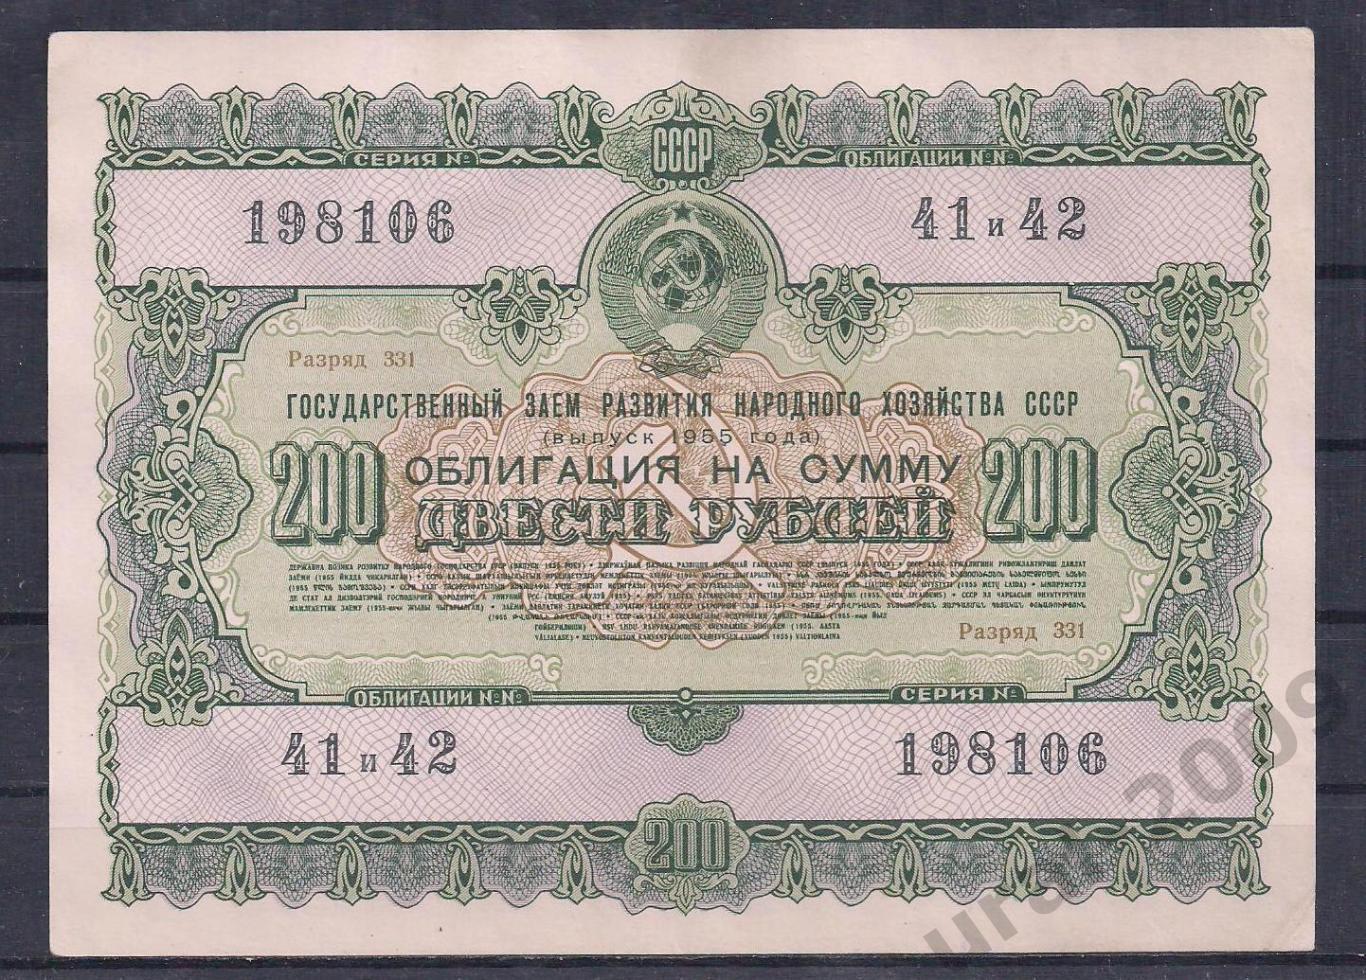 СССР, Облигация 200 рублей 1955 год! 198106.